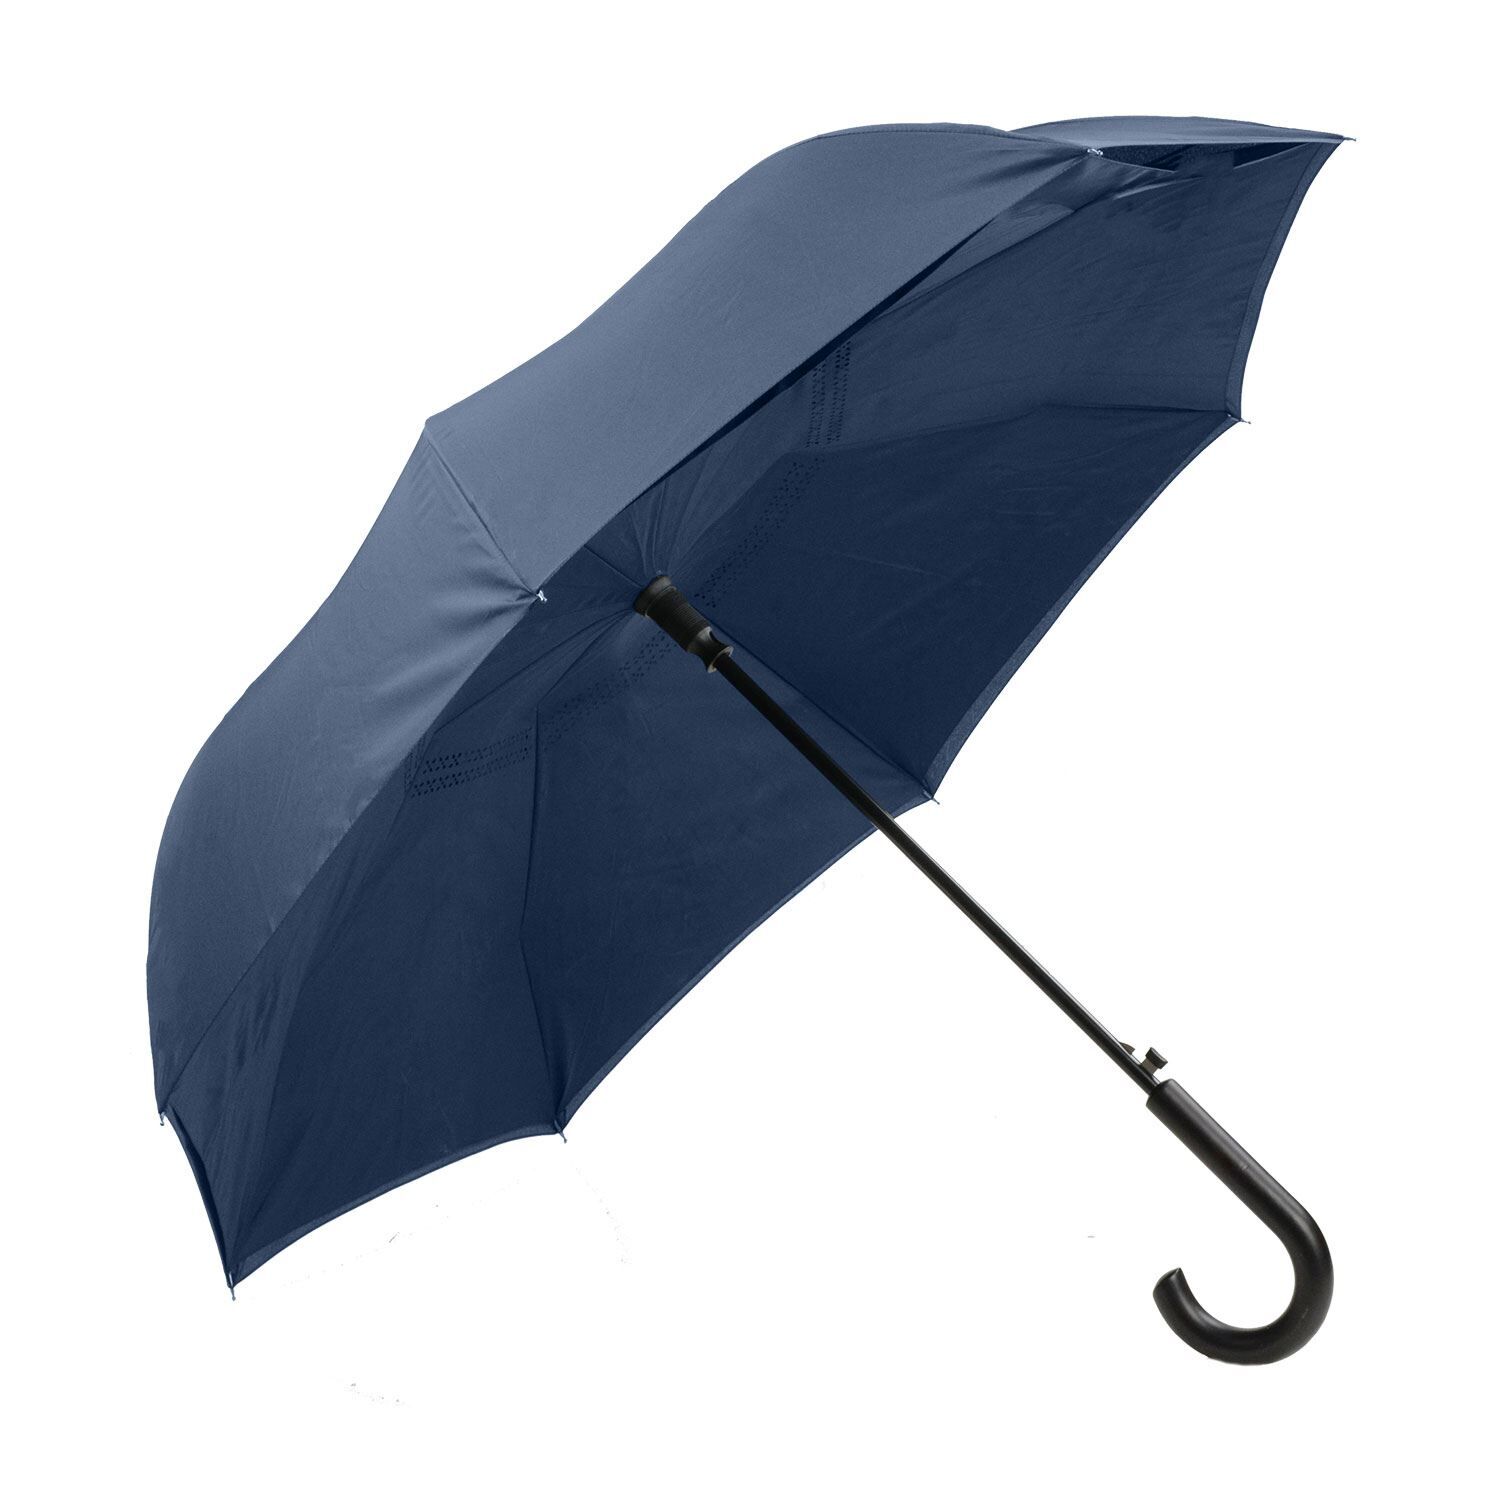 Custom Branded ShedRain Umbrellas - Navy/Navy